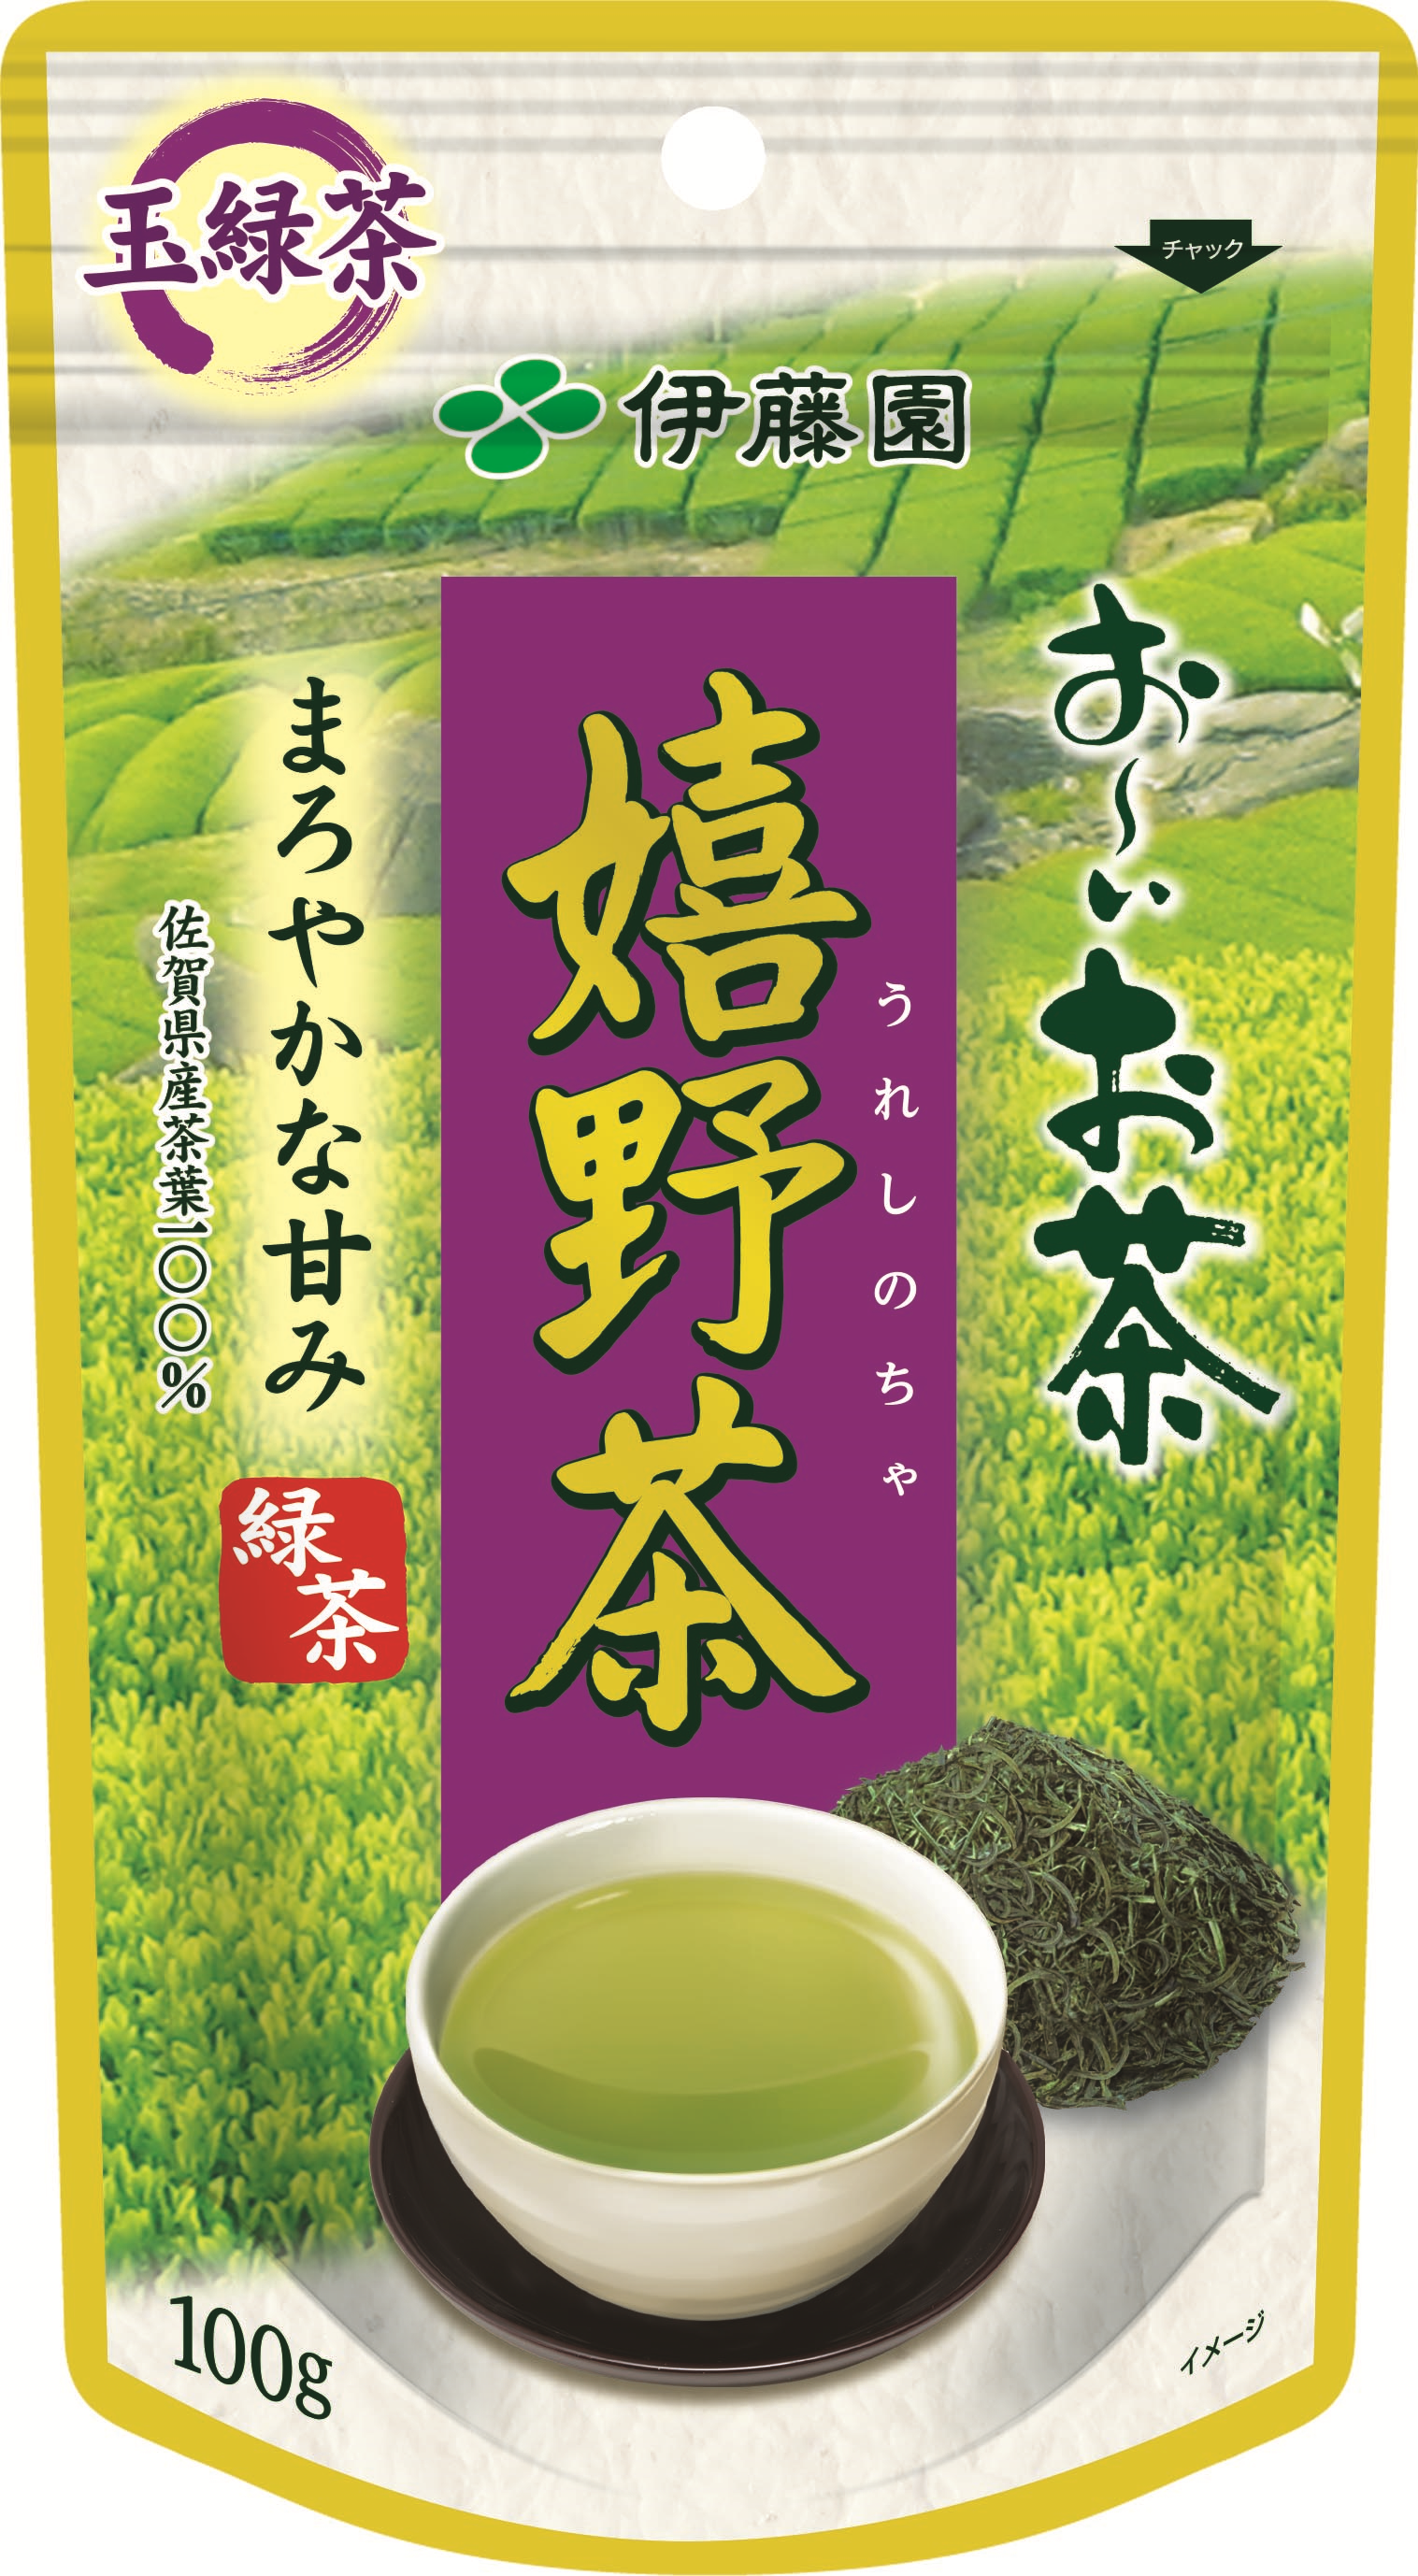 嬉野茶 玉緑茶 100g ☓ 2袋 - 茶